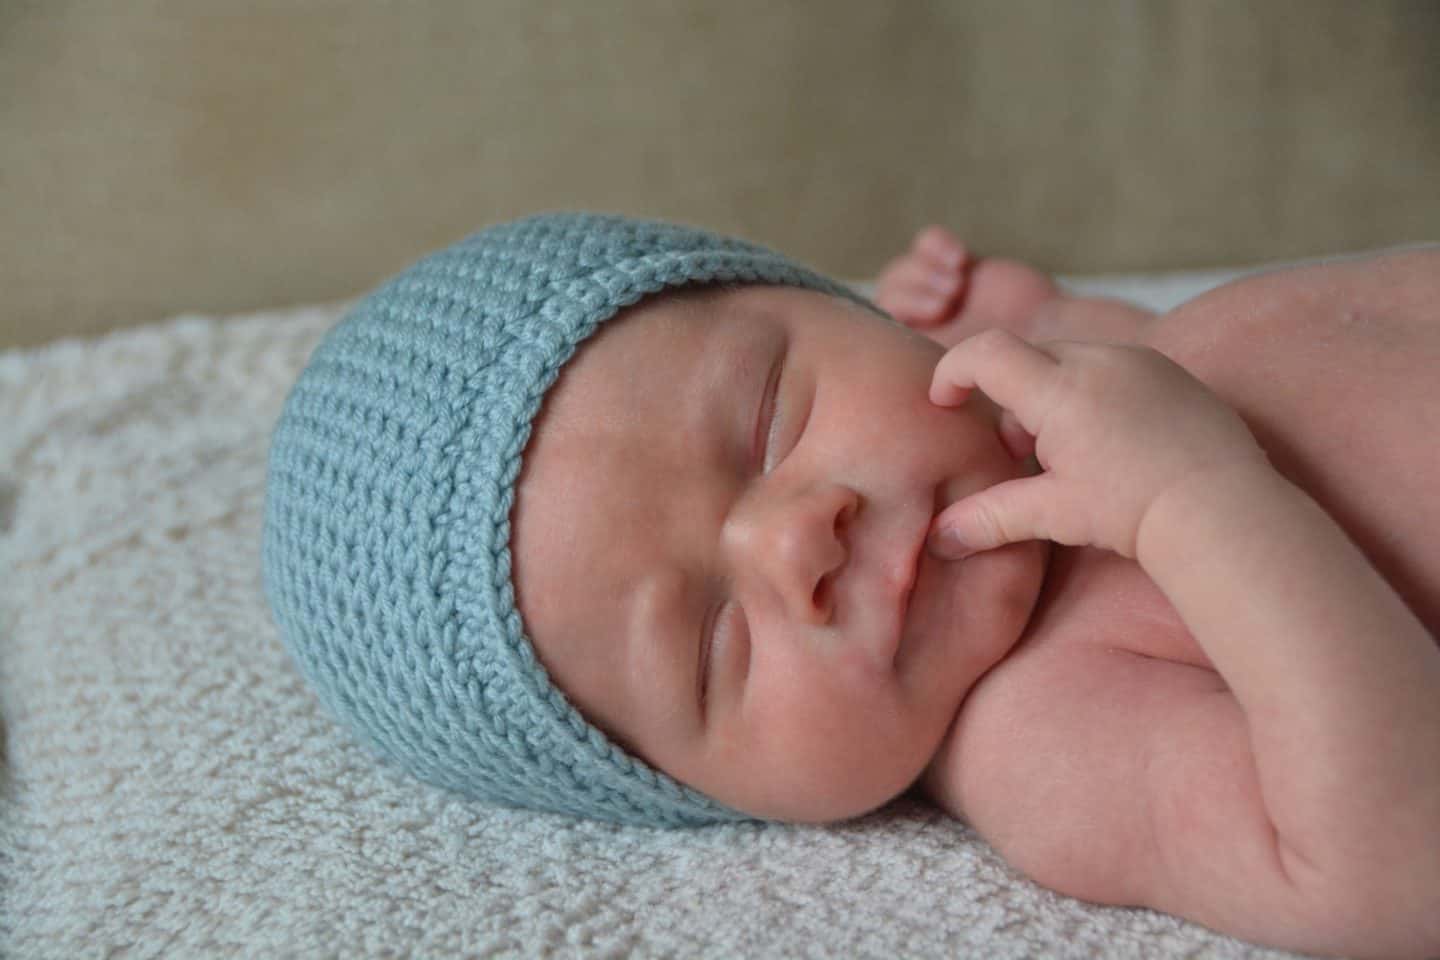  baby asleep wearing crochet beanie hat in blue